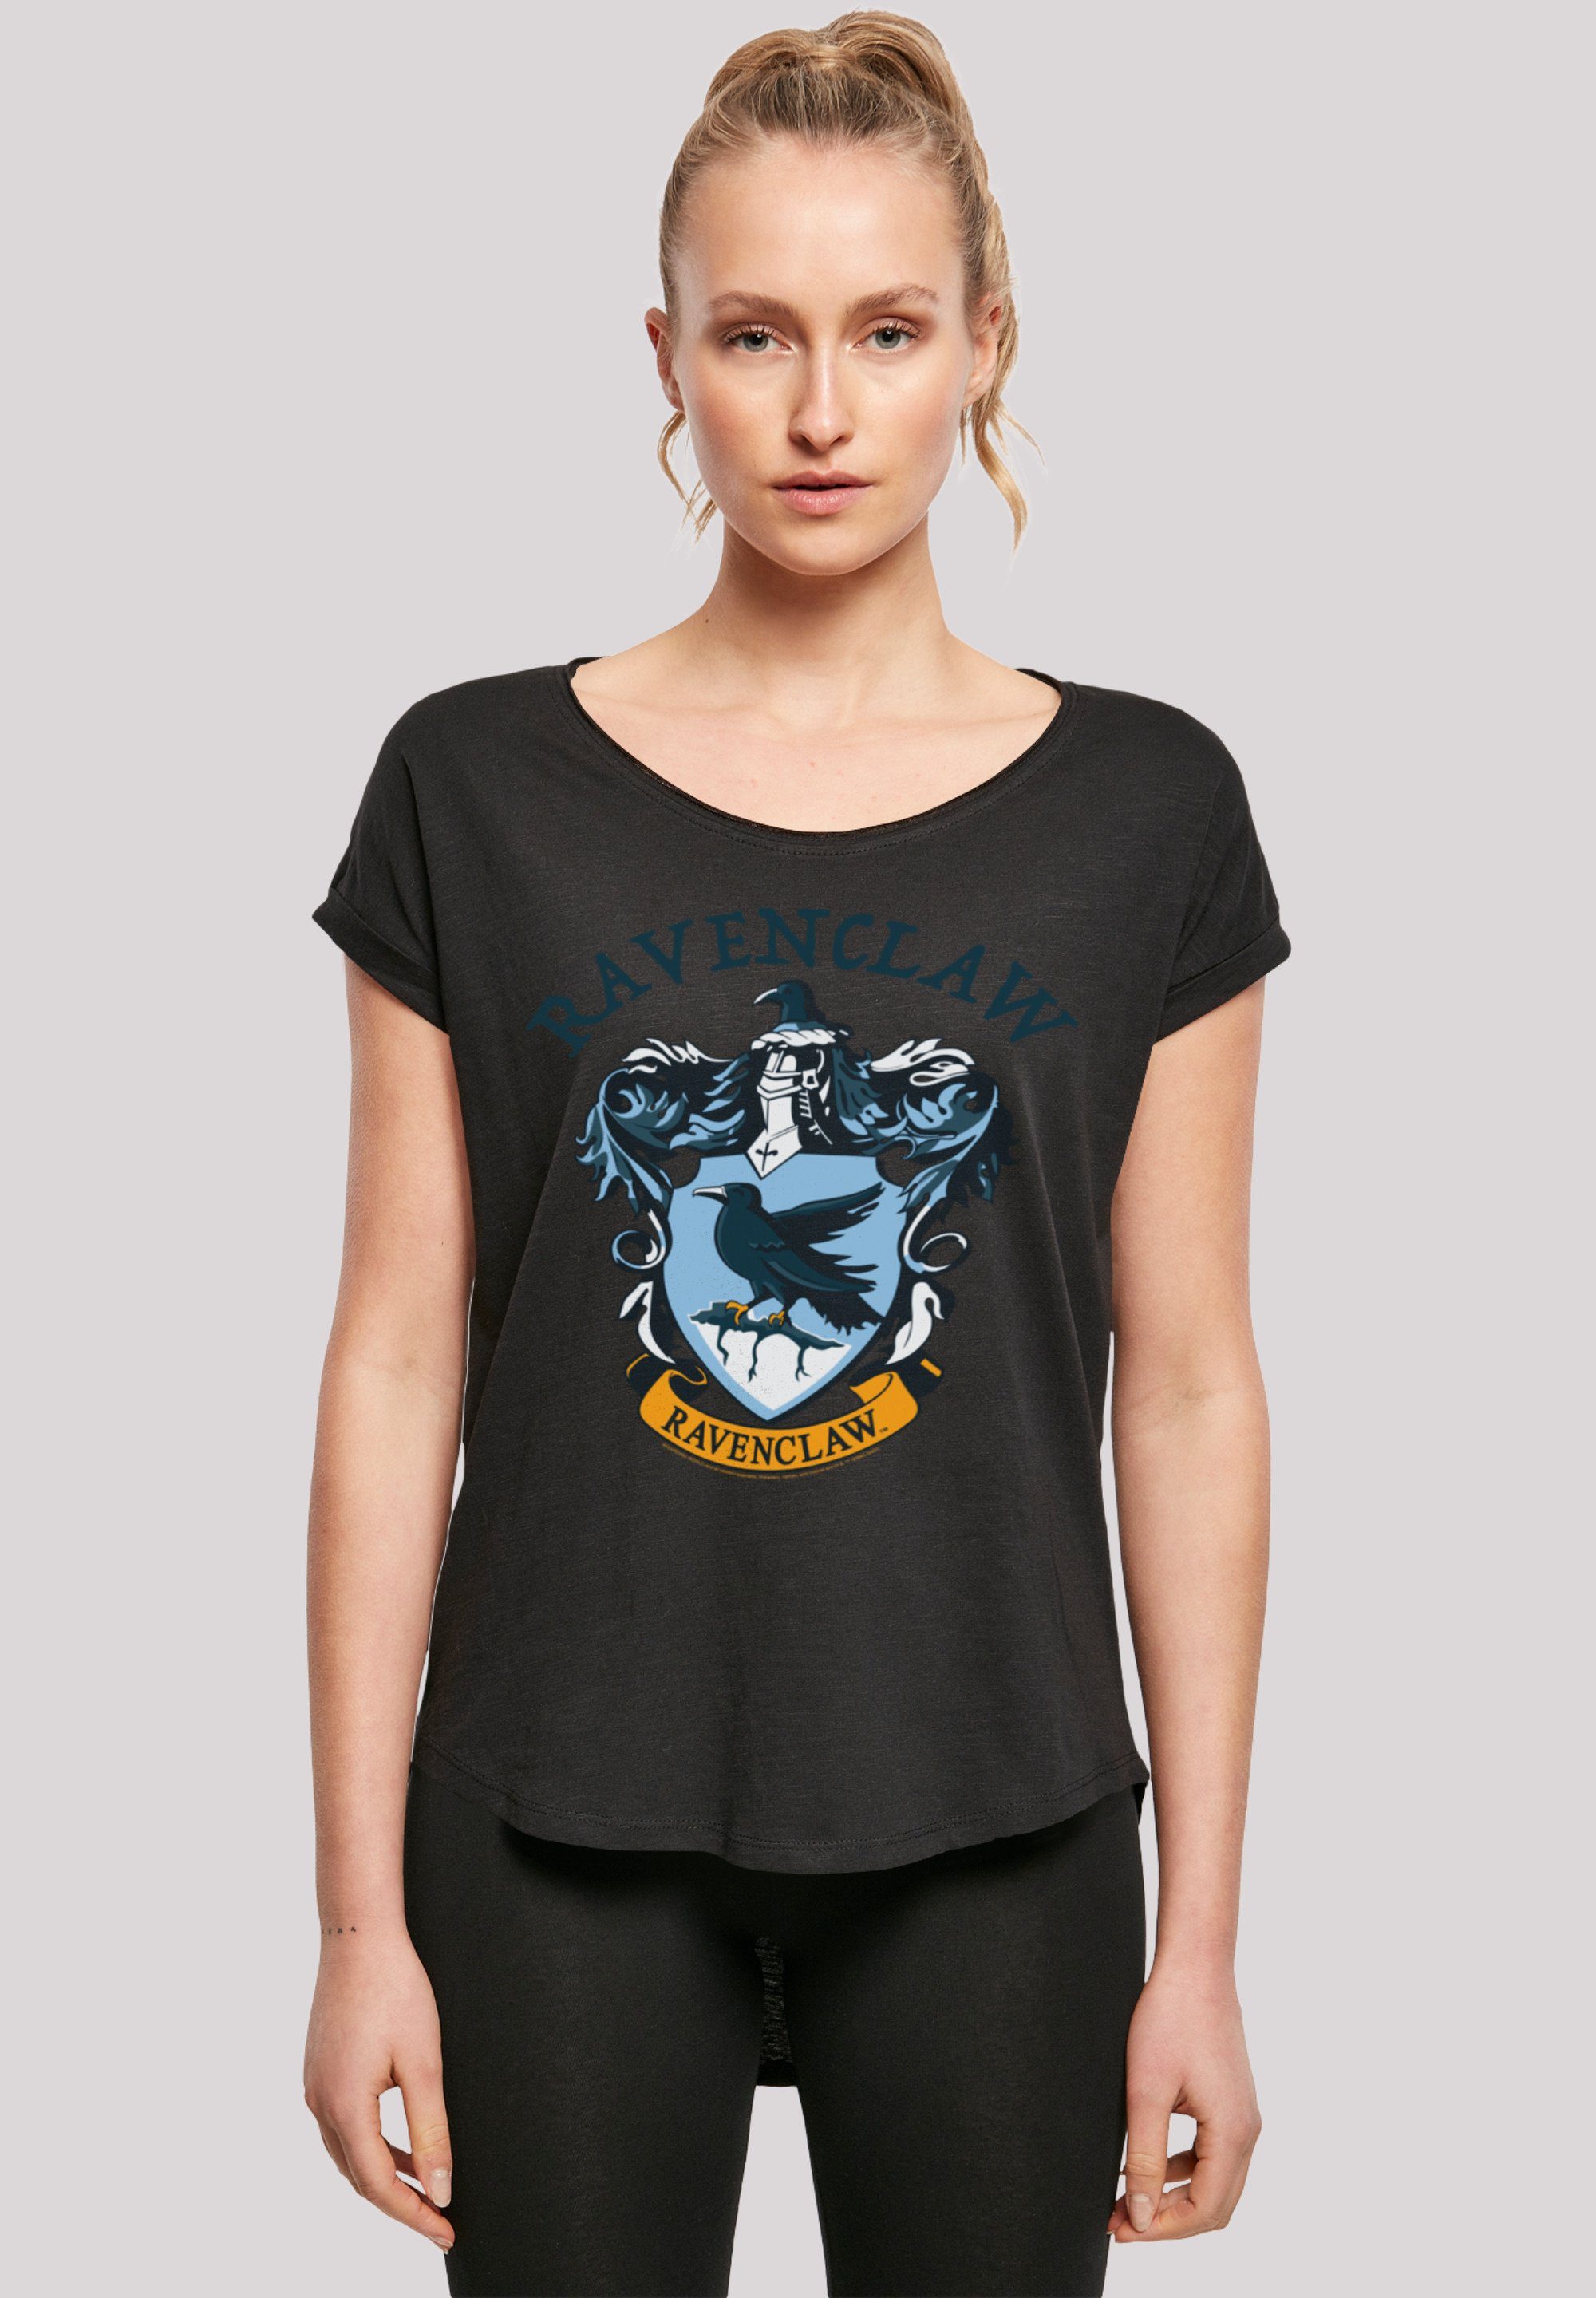 Potter lang extra Crest Damen T-Shirt Hinten F4NT4STIC T-Shirt Harry Print, Ravenclaw geschnittenes